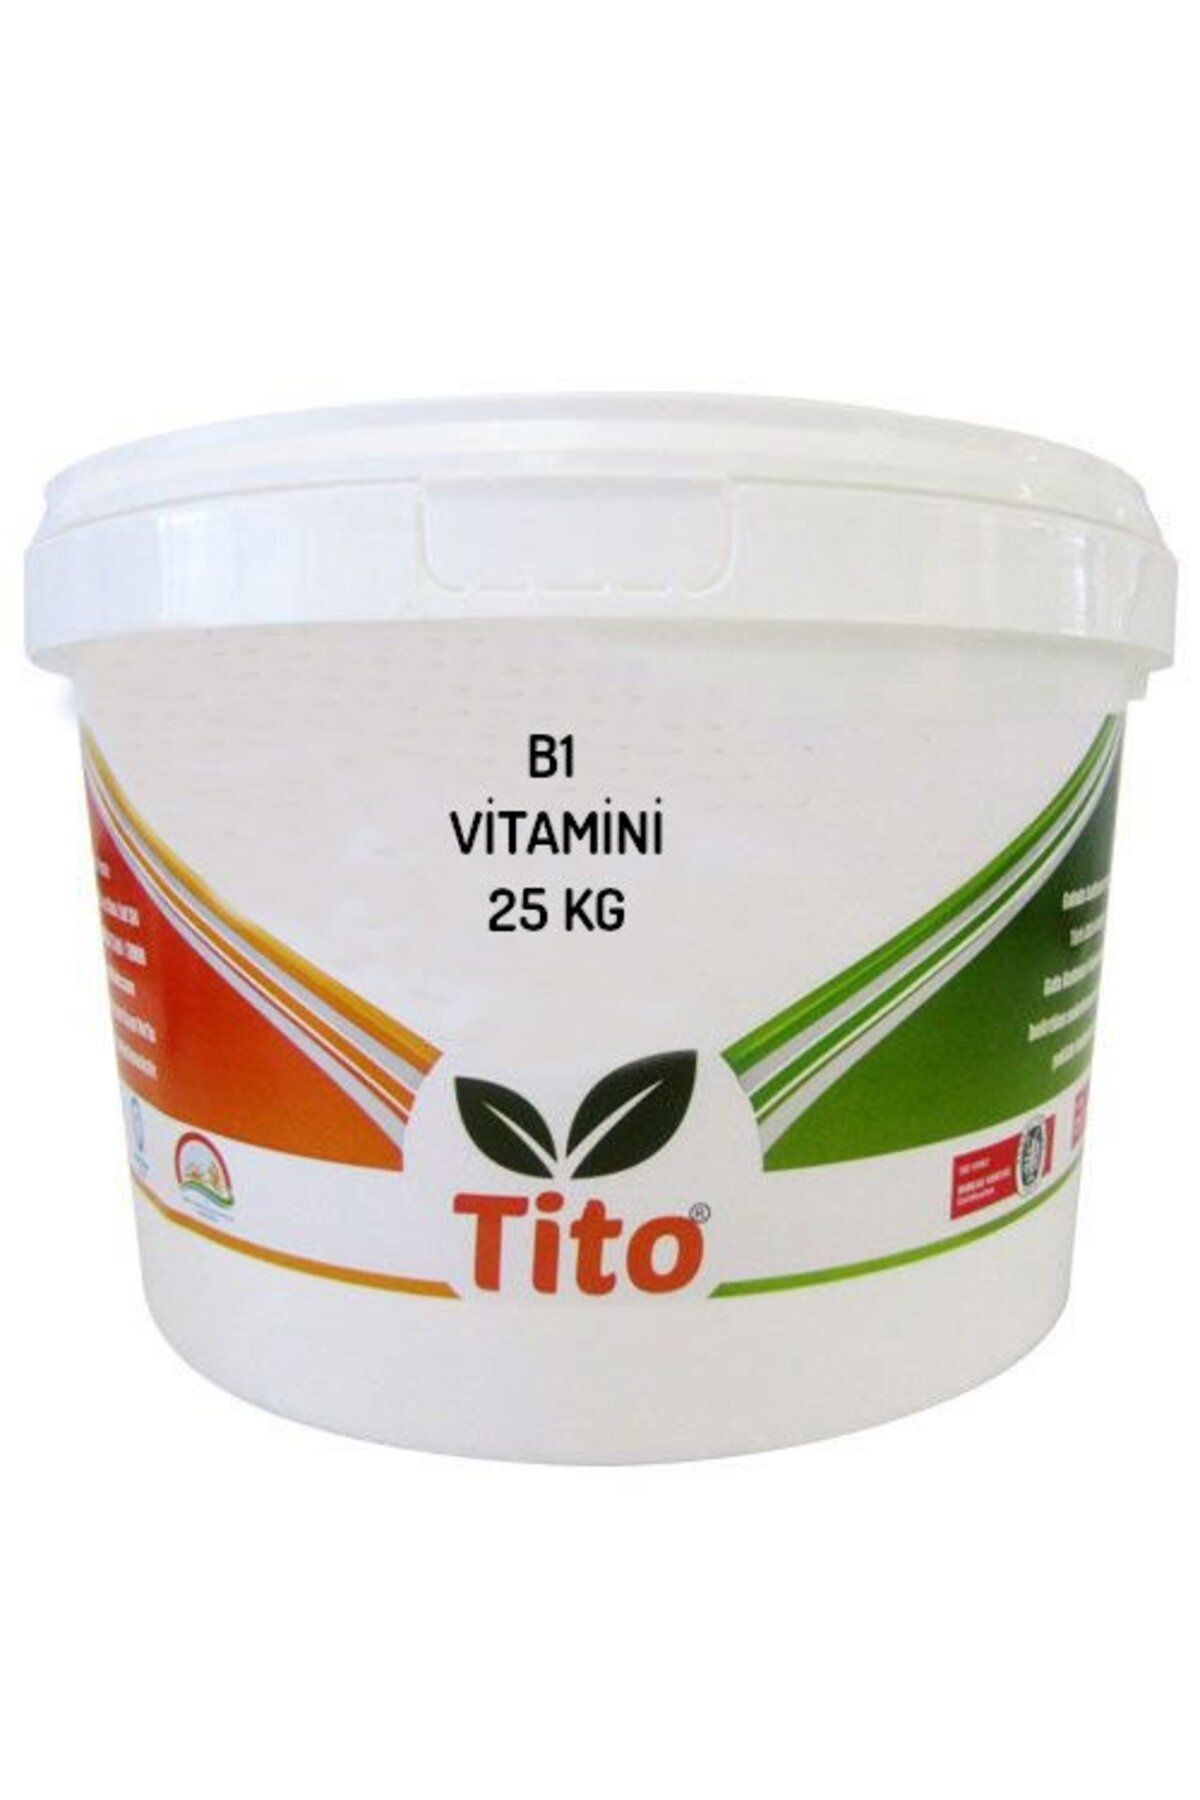 tito B1 Vitamini Tiamin Hidroklorür 25 Kg